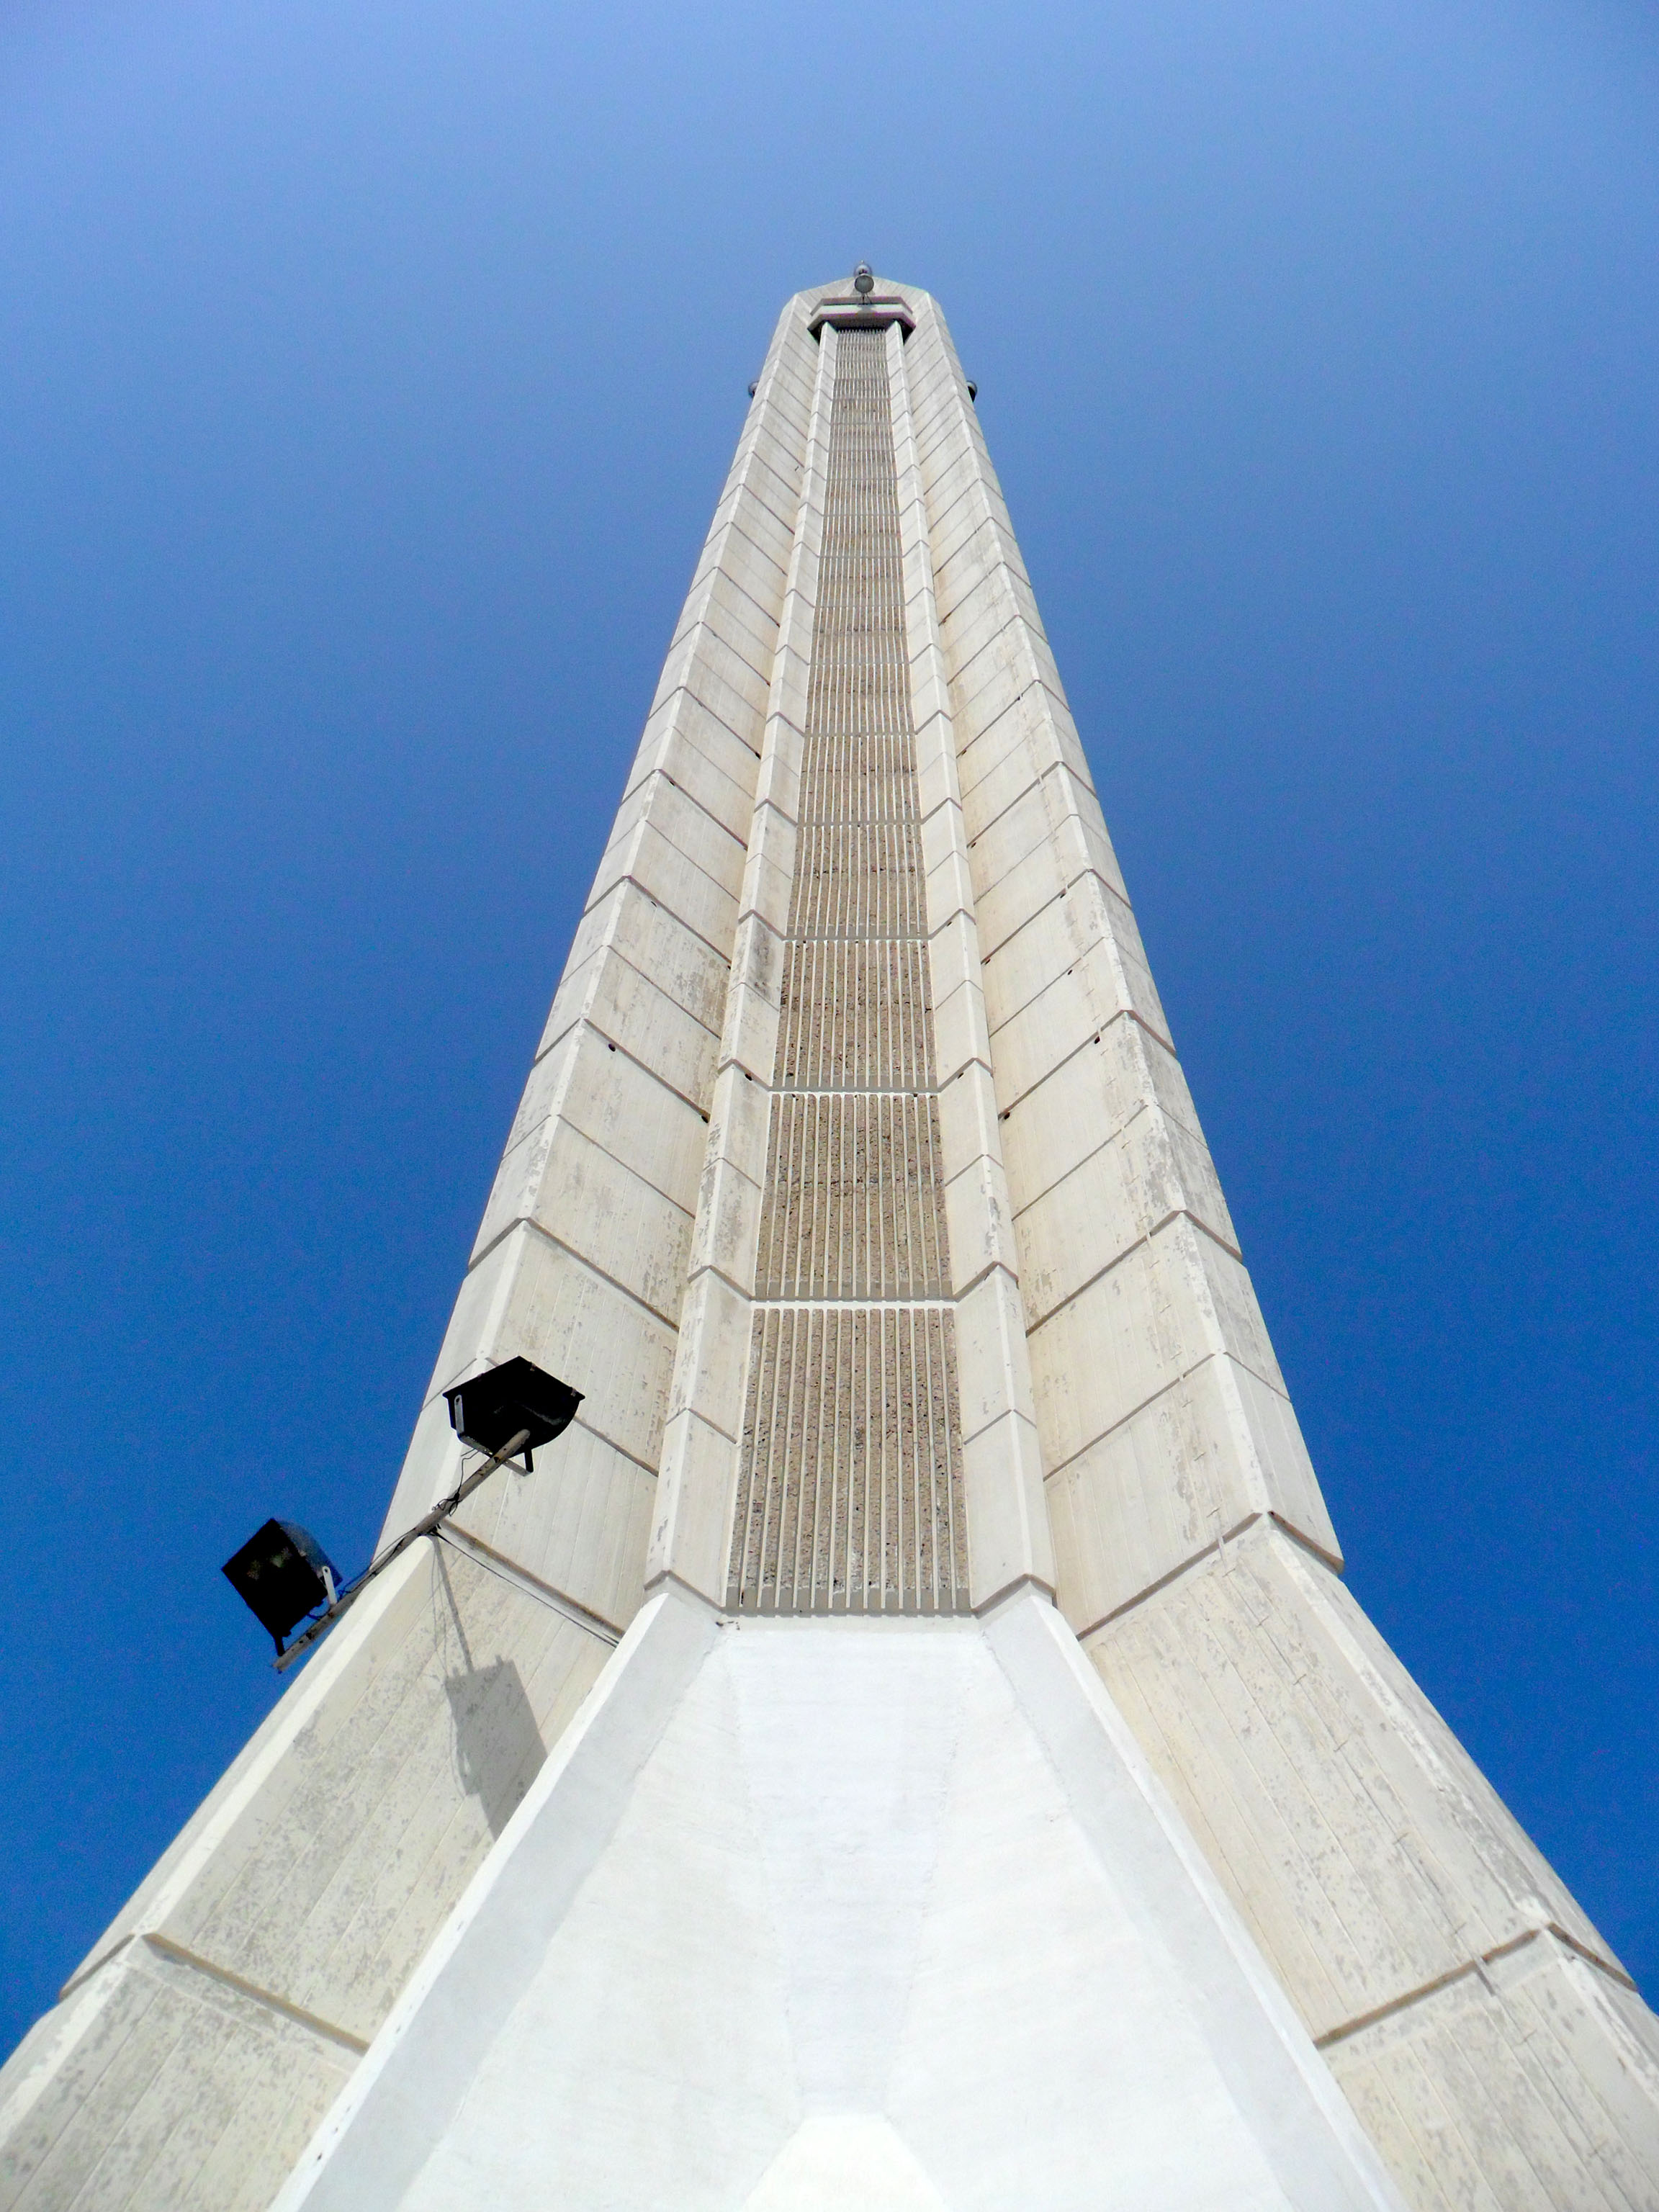 A Minaret of Shah Faisal Mosque